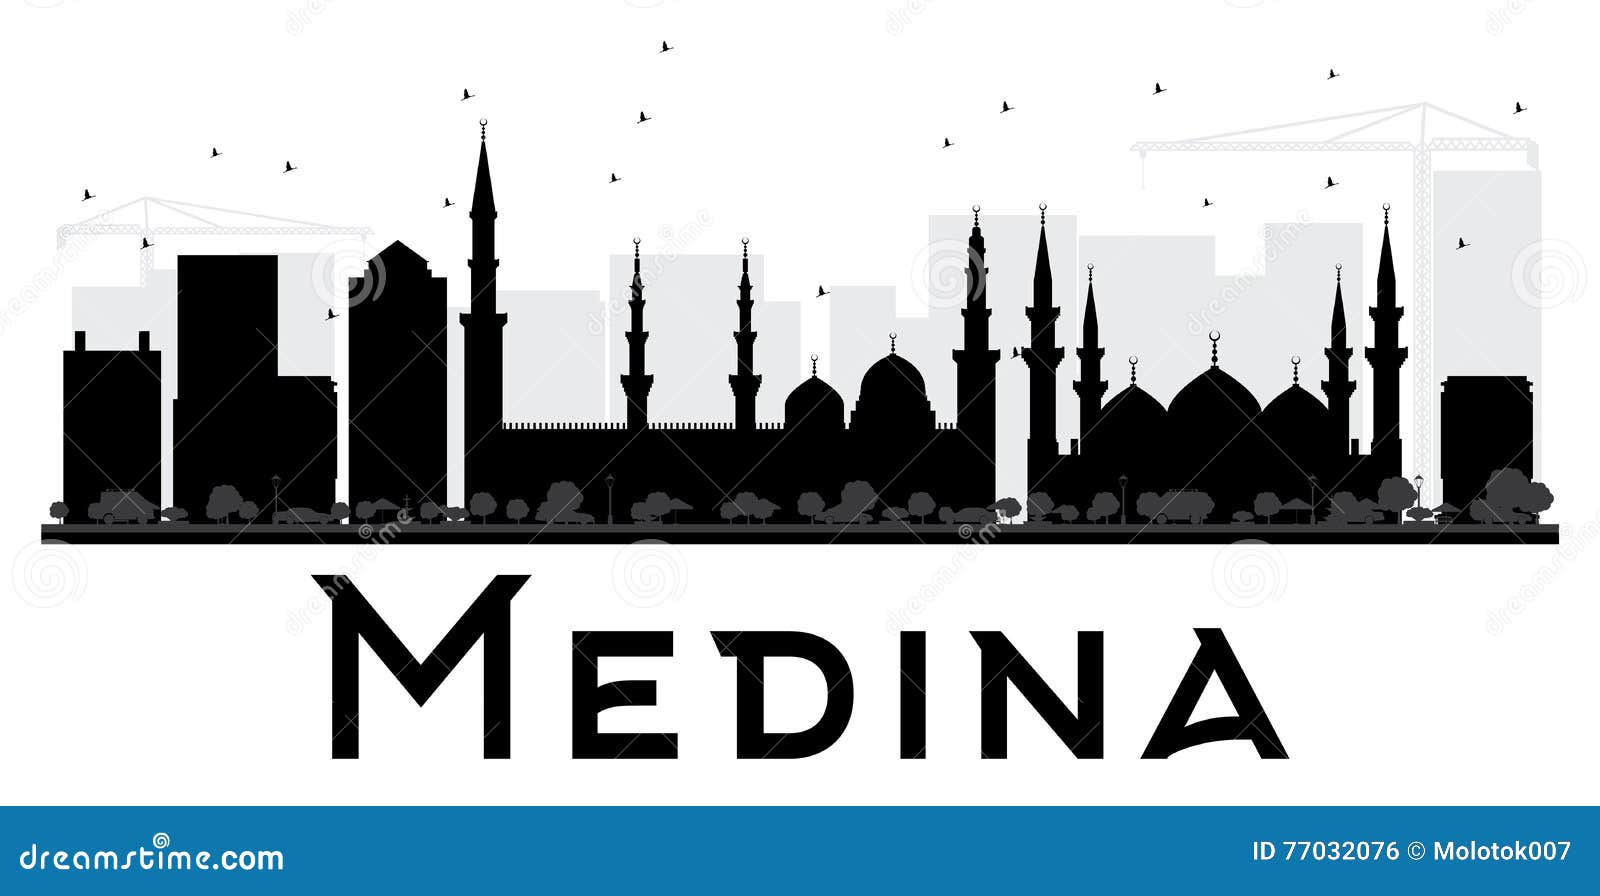 Medina City skyline black and white silhouette.